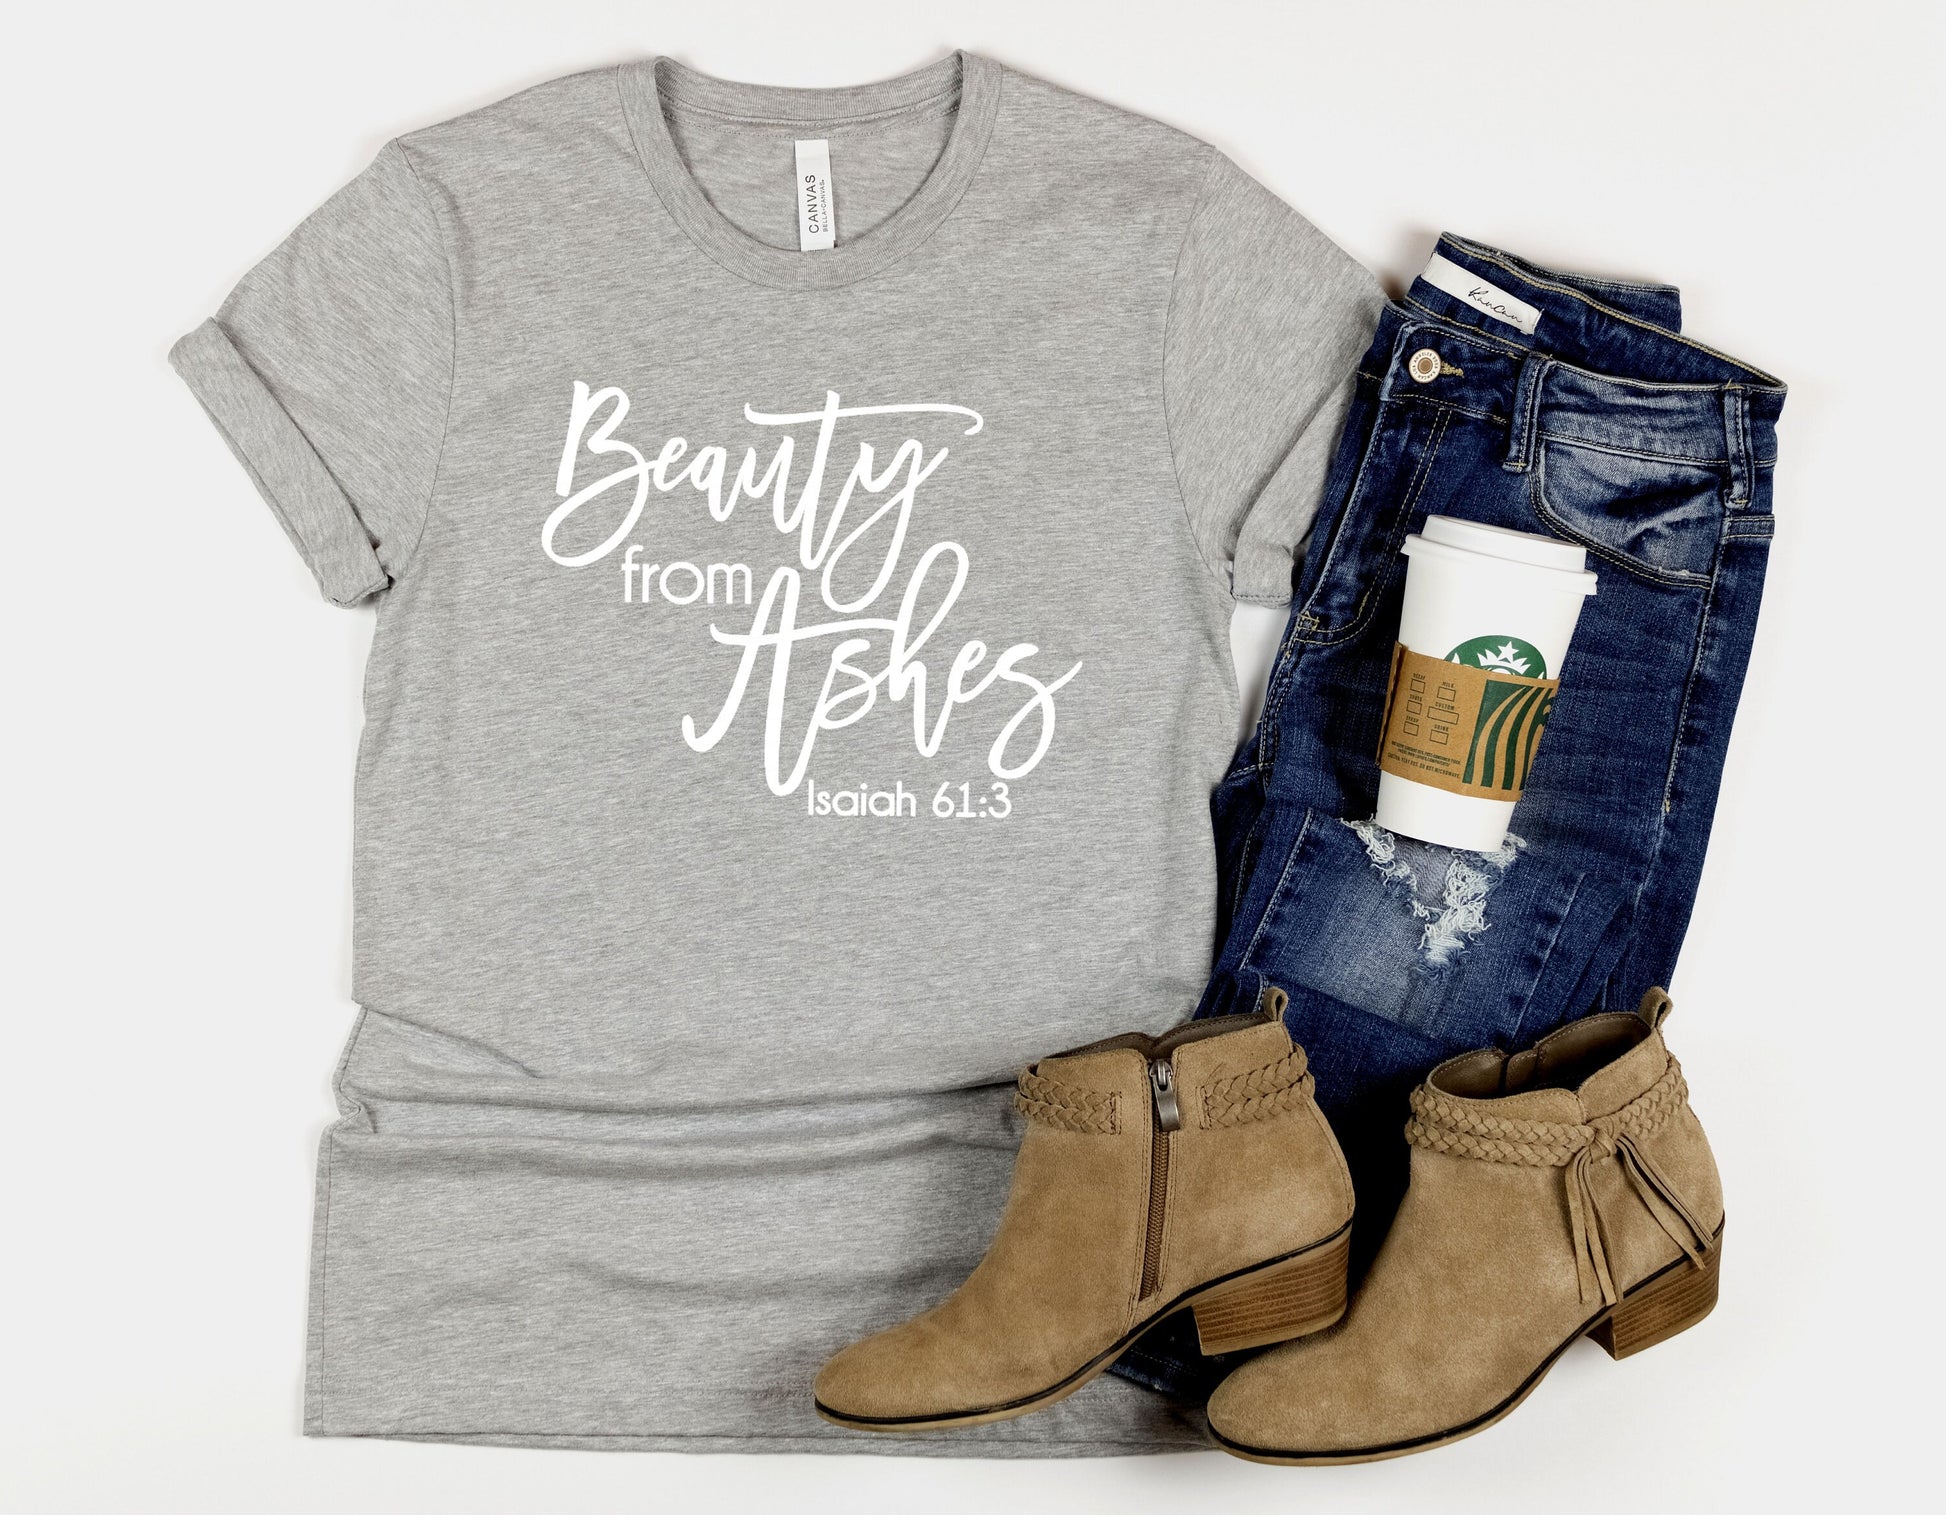 Beauty from Ashes Women's Scripture t-shirt • Unisex Fit • Bible Verse Shirt • Christian Shirt • Faith Shirt • Inspirational Gift